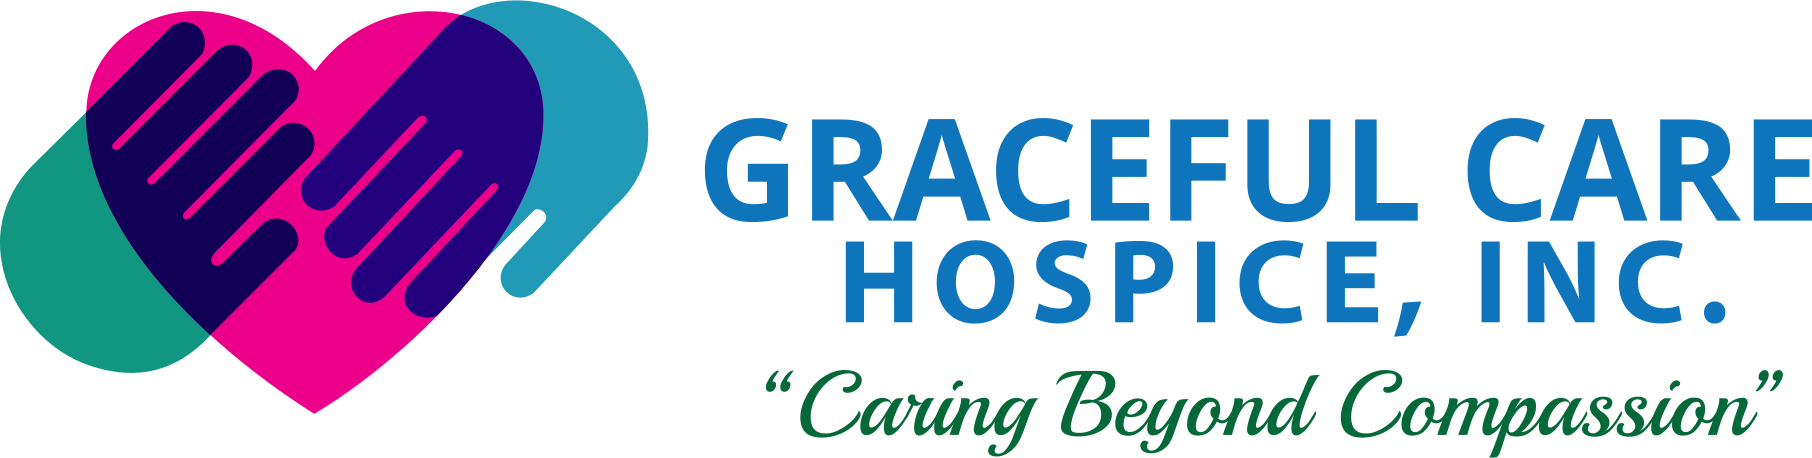 Graceful Care Hospice, Inc.